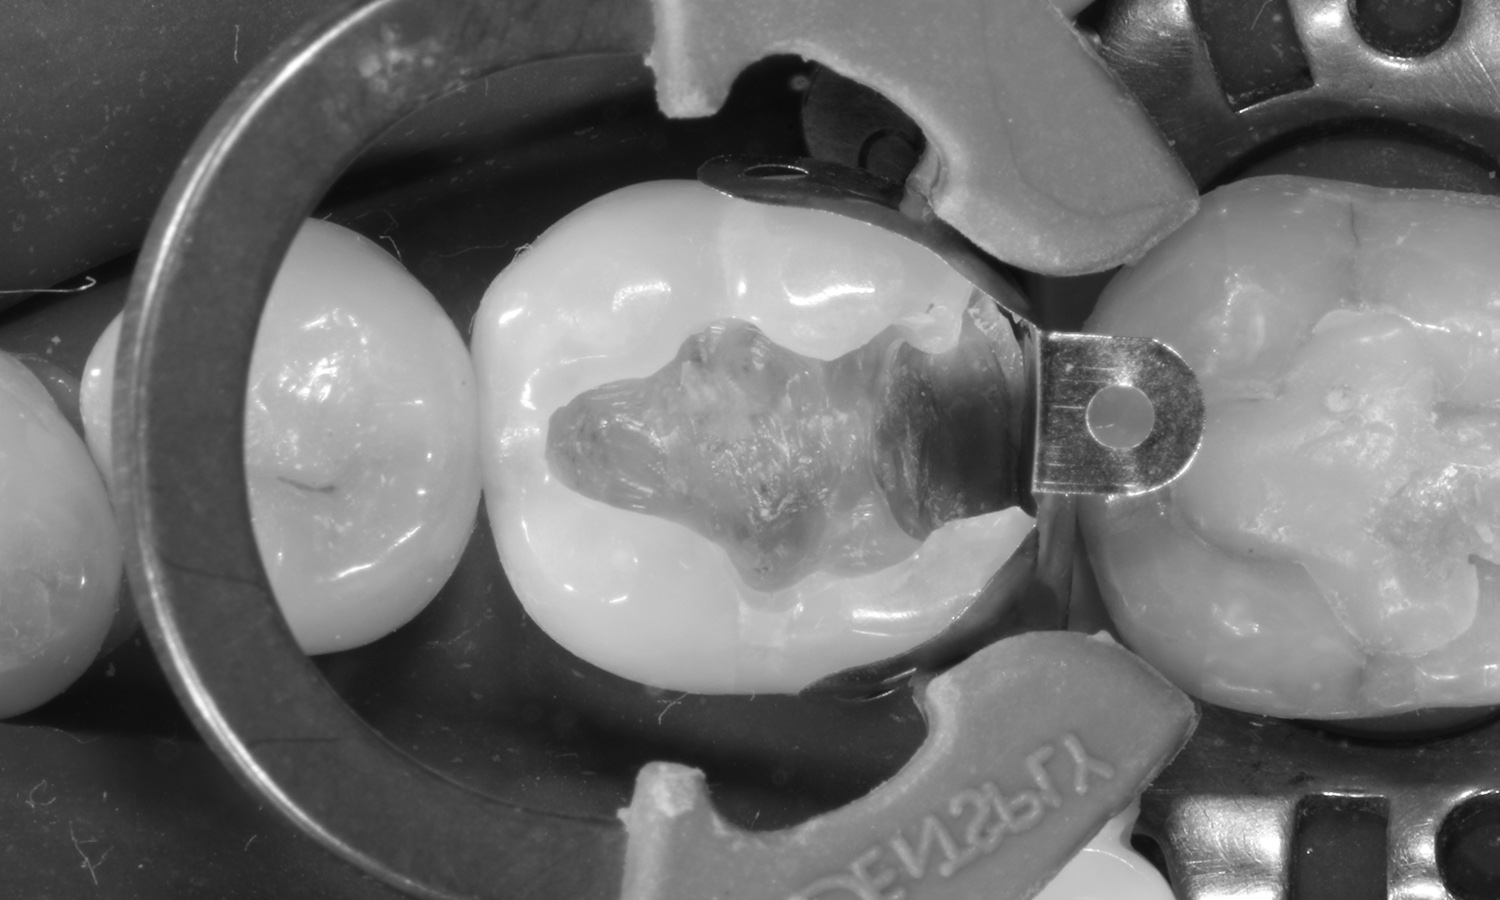 restauração dental em porcelana